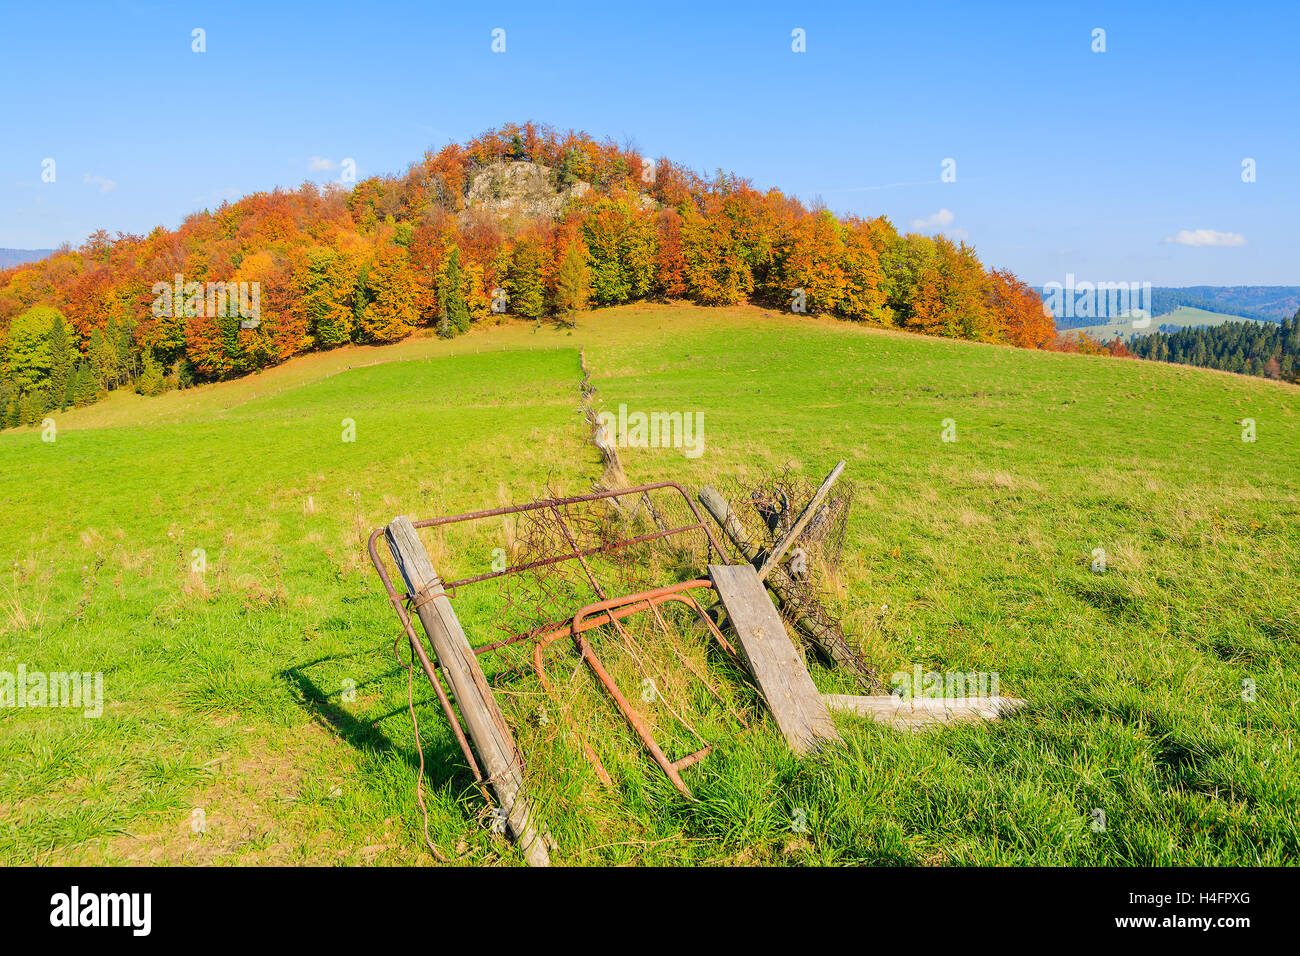 La porte en clôture en bois sur terrain vert dans les montagnes Pieniny par beau jour d'automne, Pologne Banque D'Images